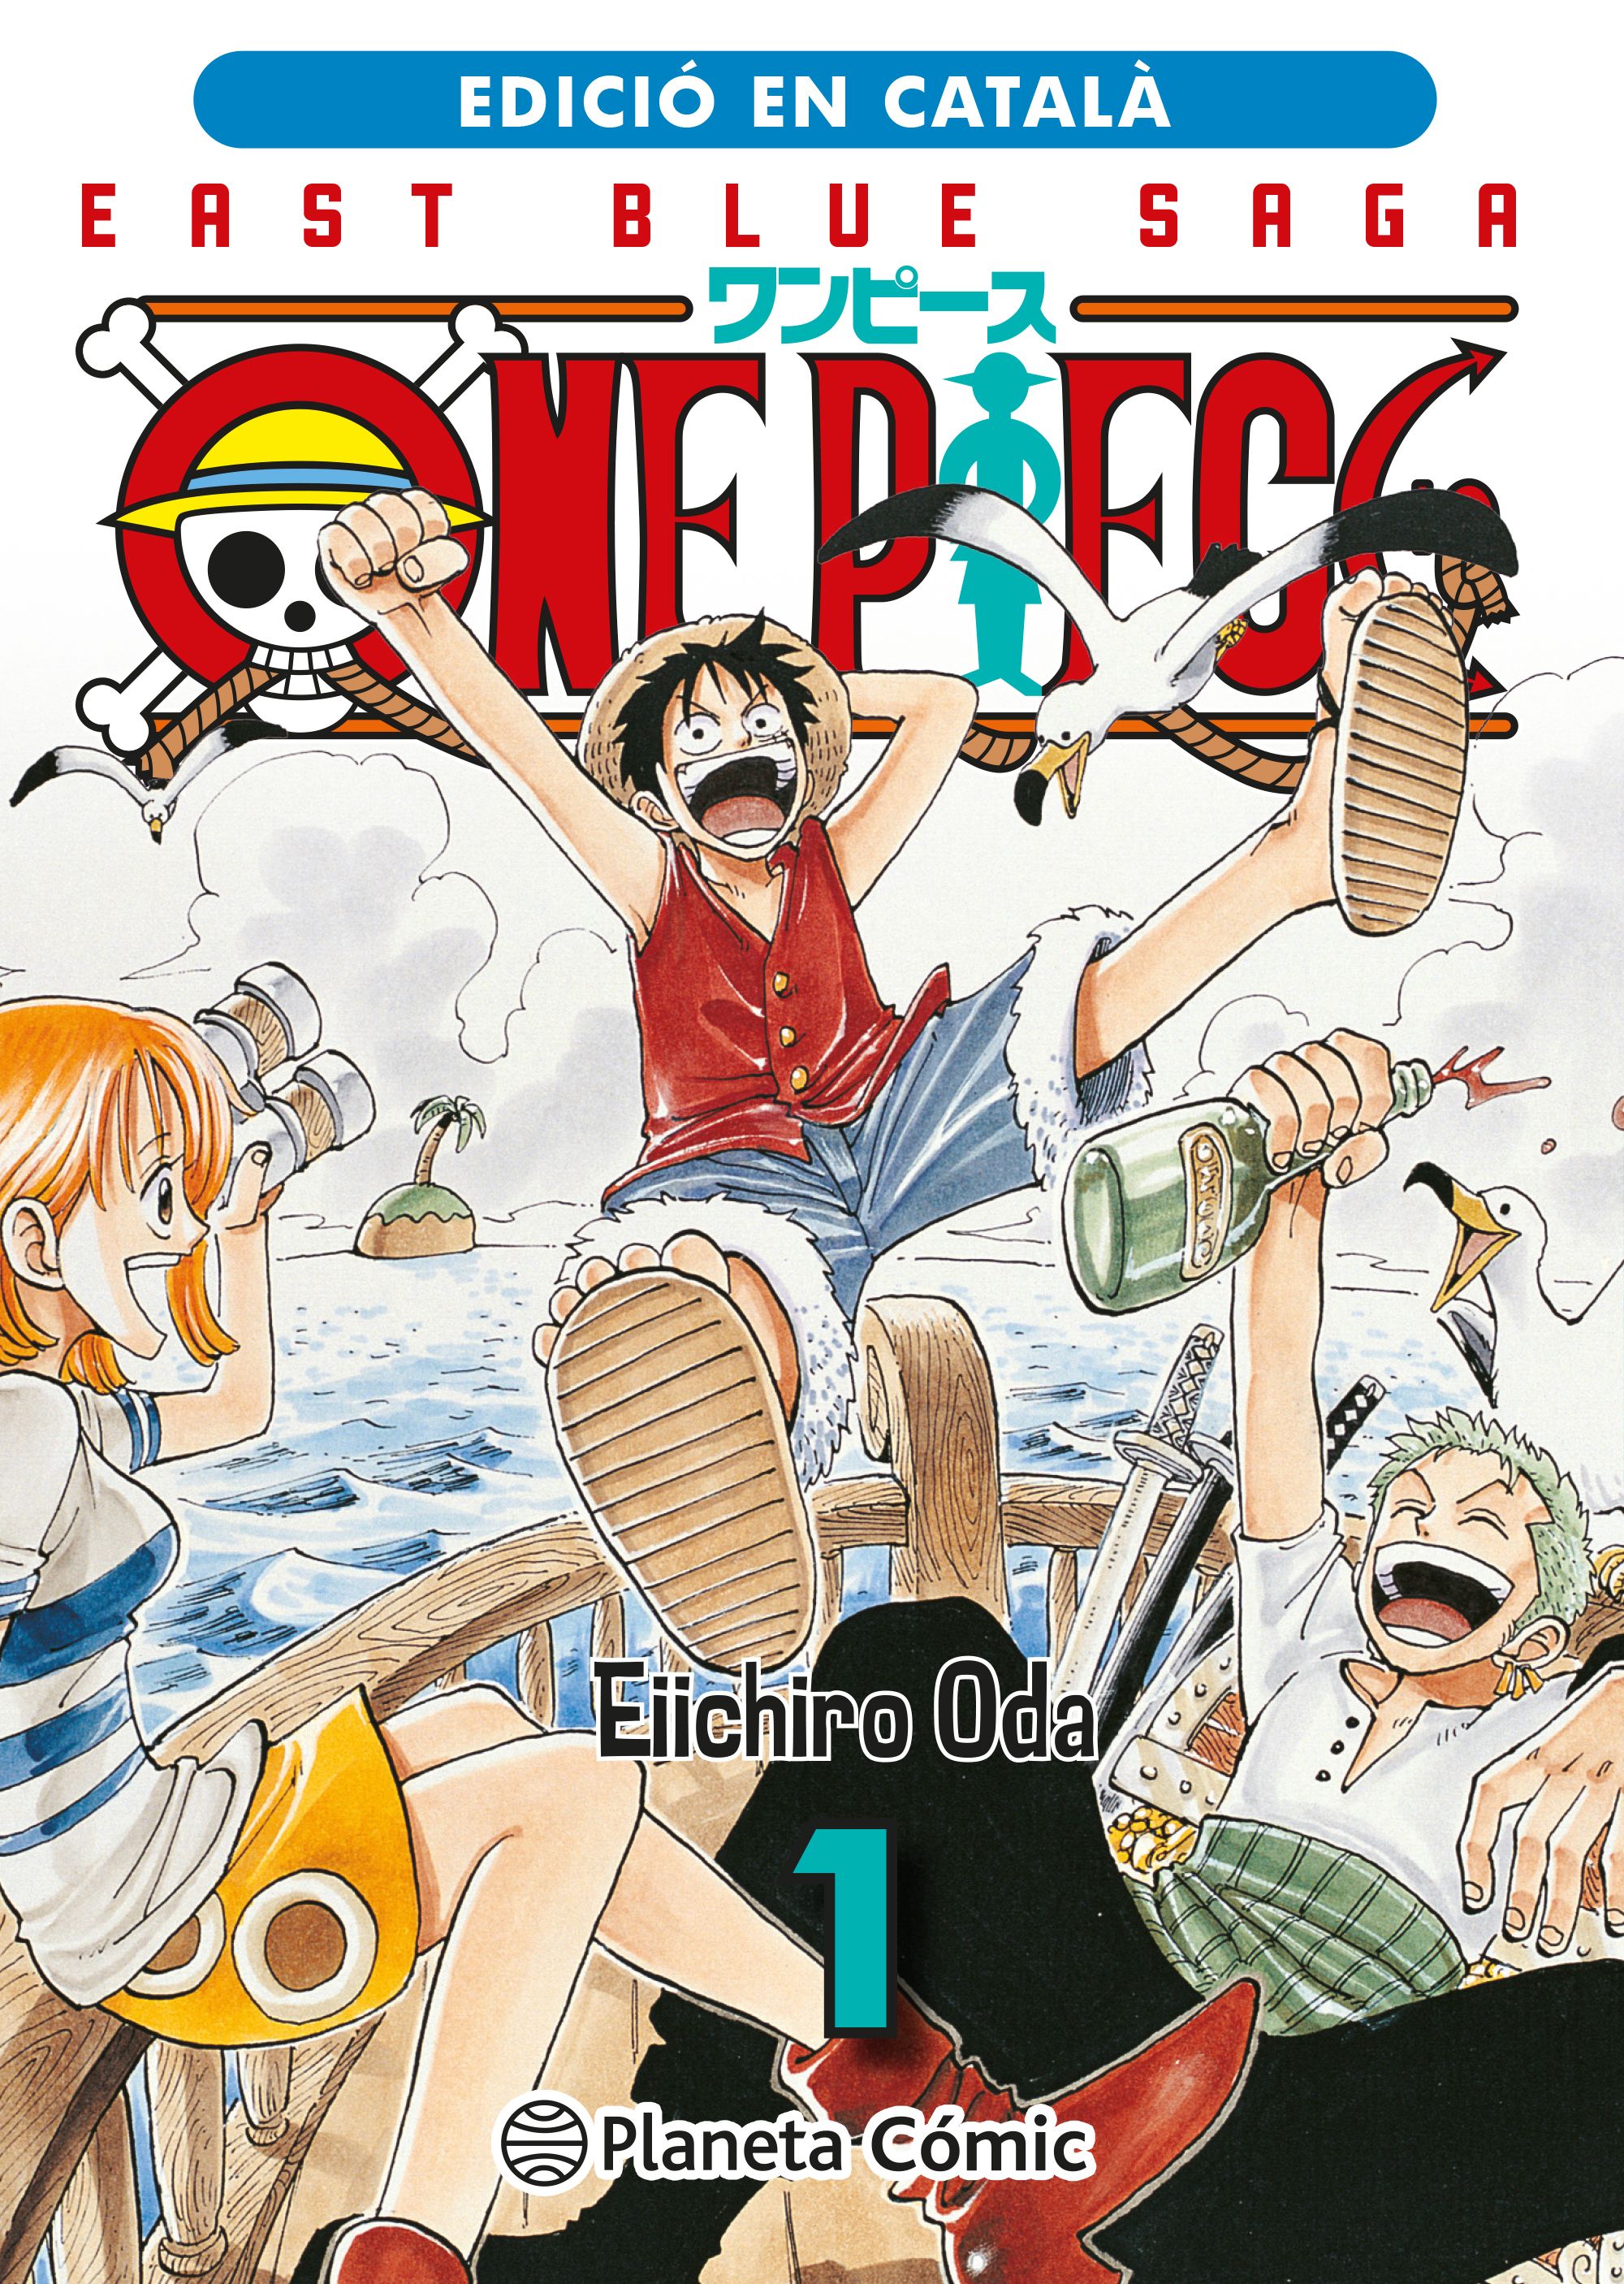 One Piece fitxa a una estrella de Hollywood, ja té paper assignat